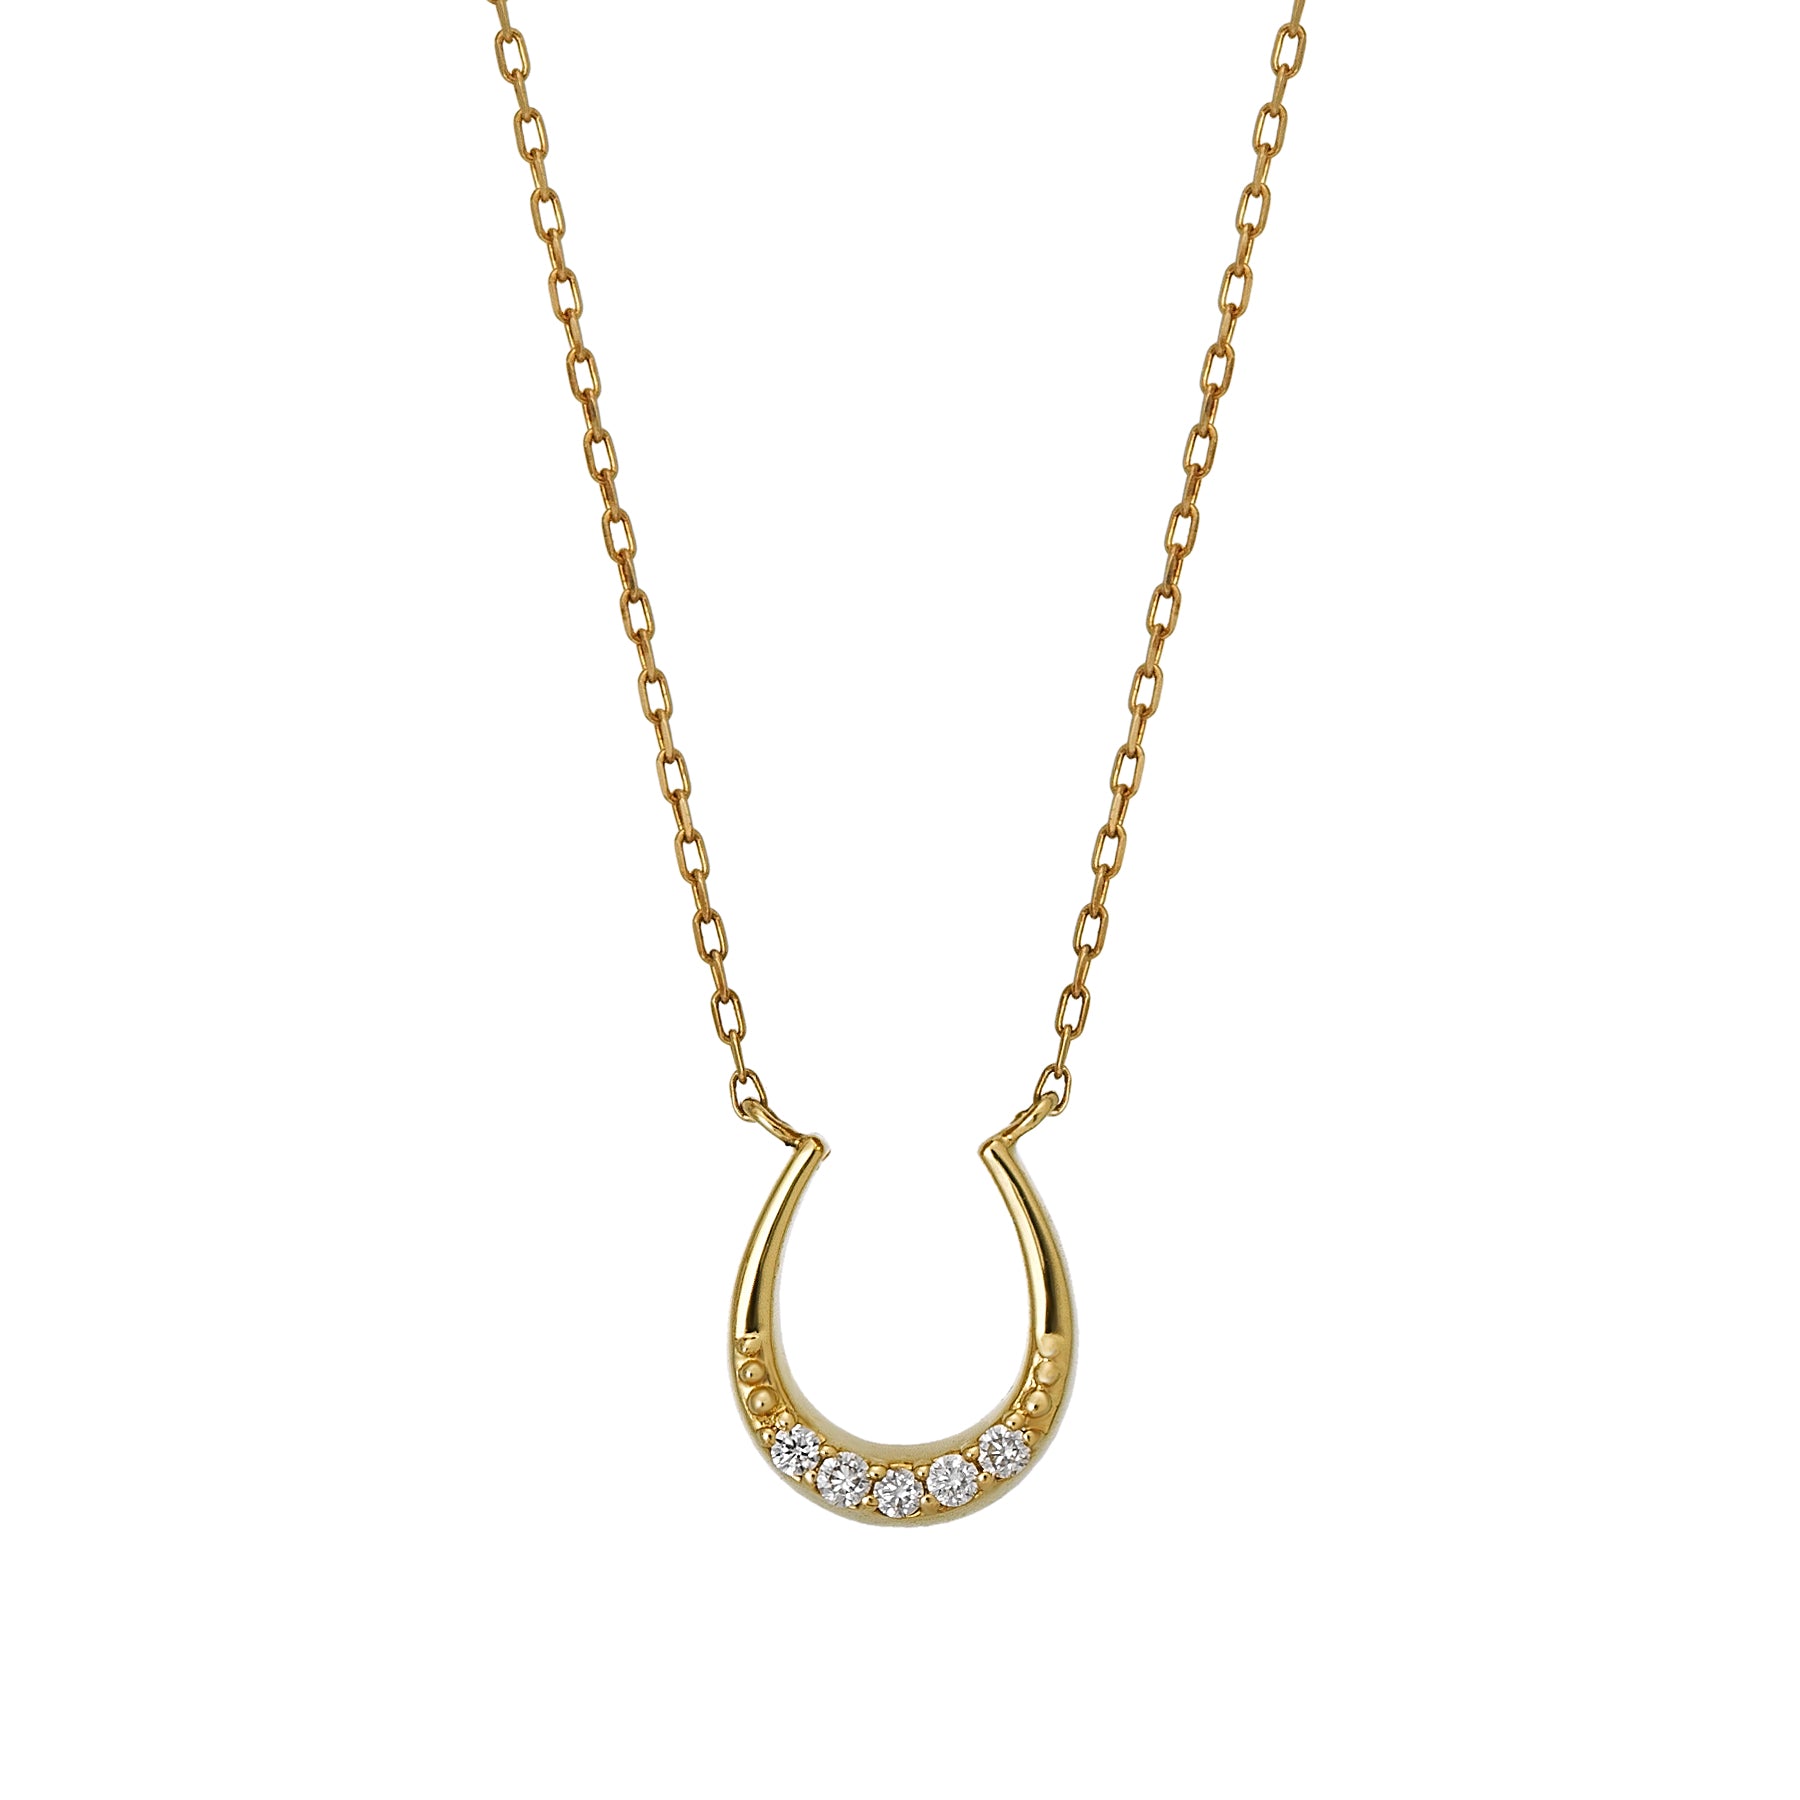 18K Yellow Gold Diamond Horseshoe Necklace - Product Image